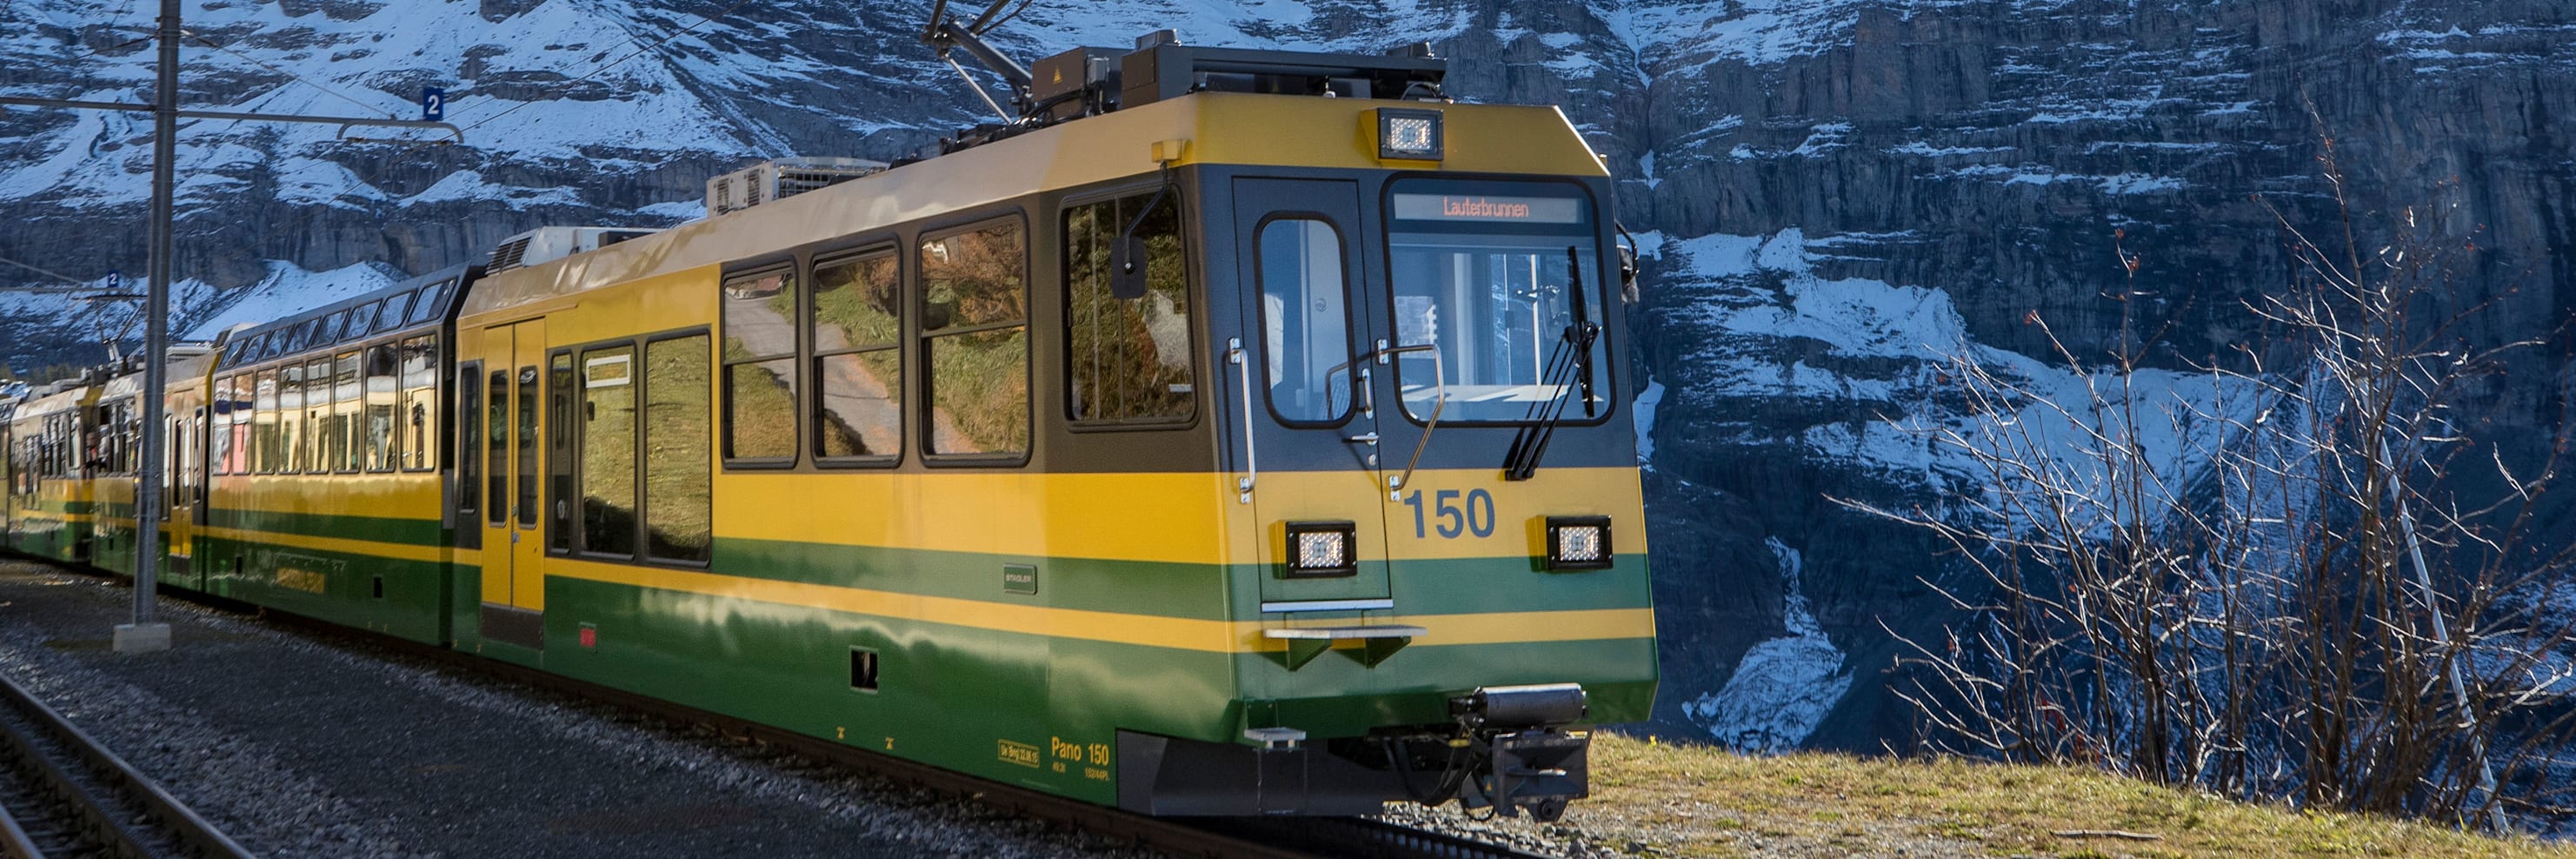 Wengernalpbahn wengernalp 2018 titelbild jungfrau